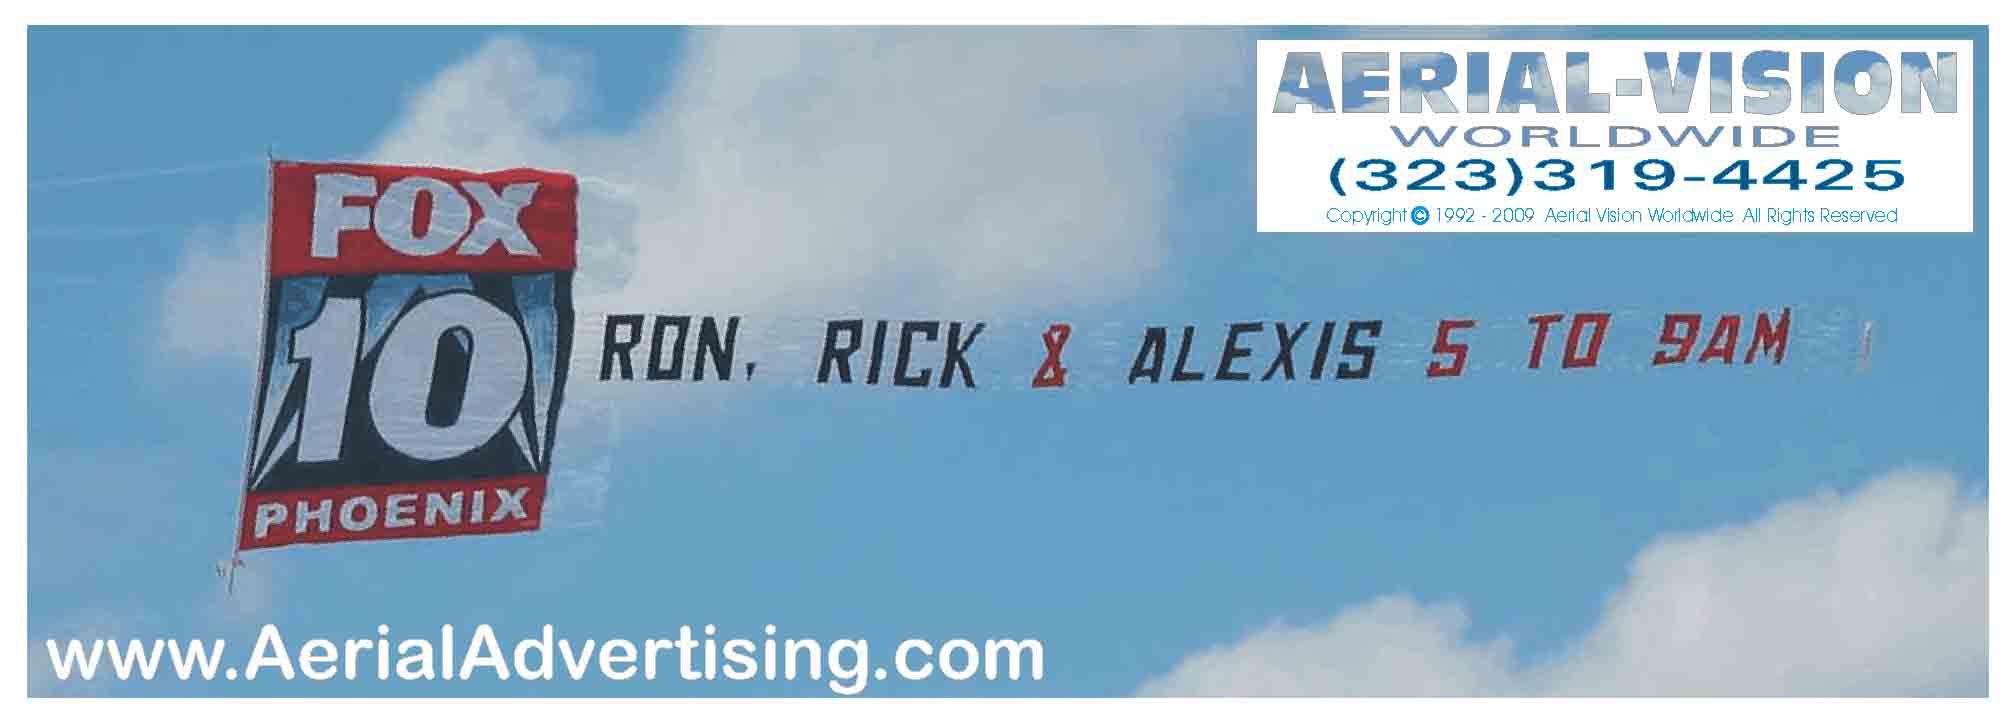 aerial_advertising_9.jpg